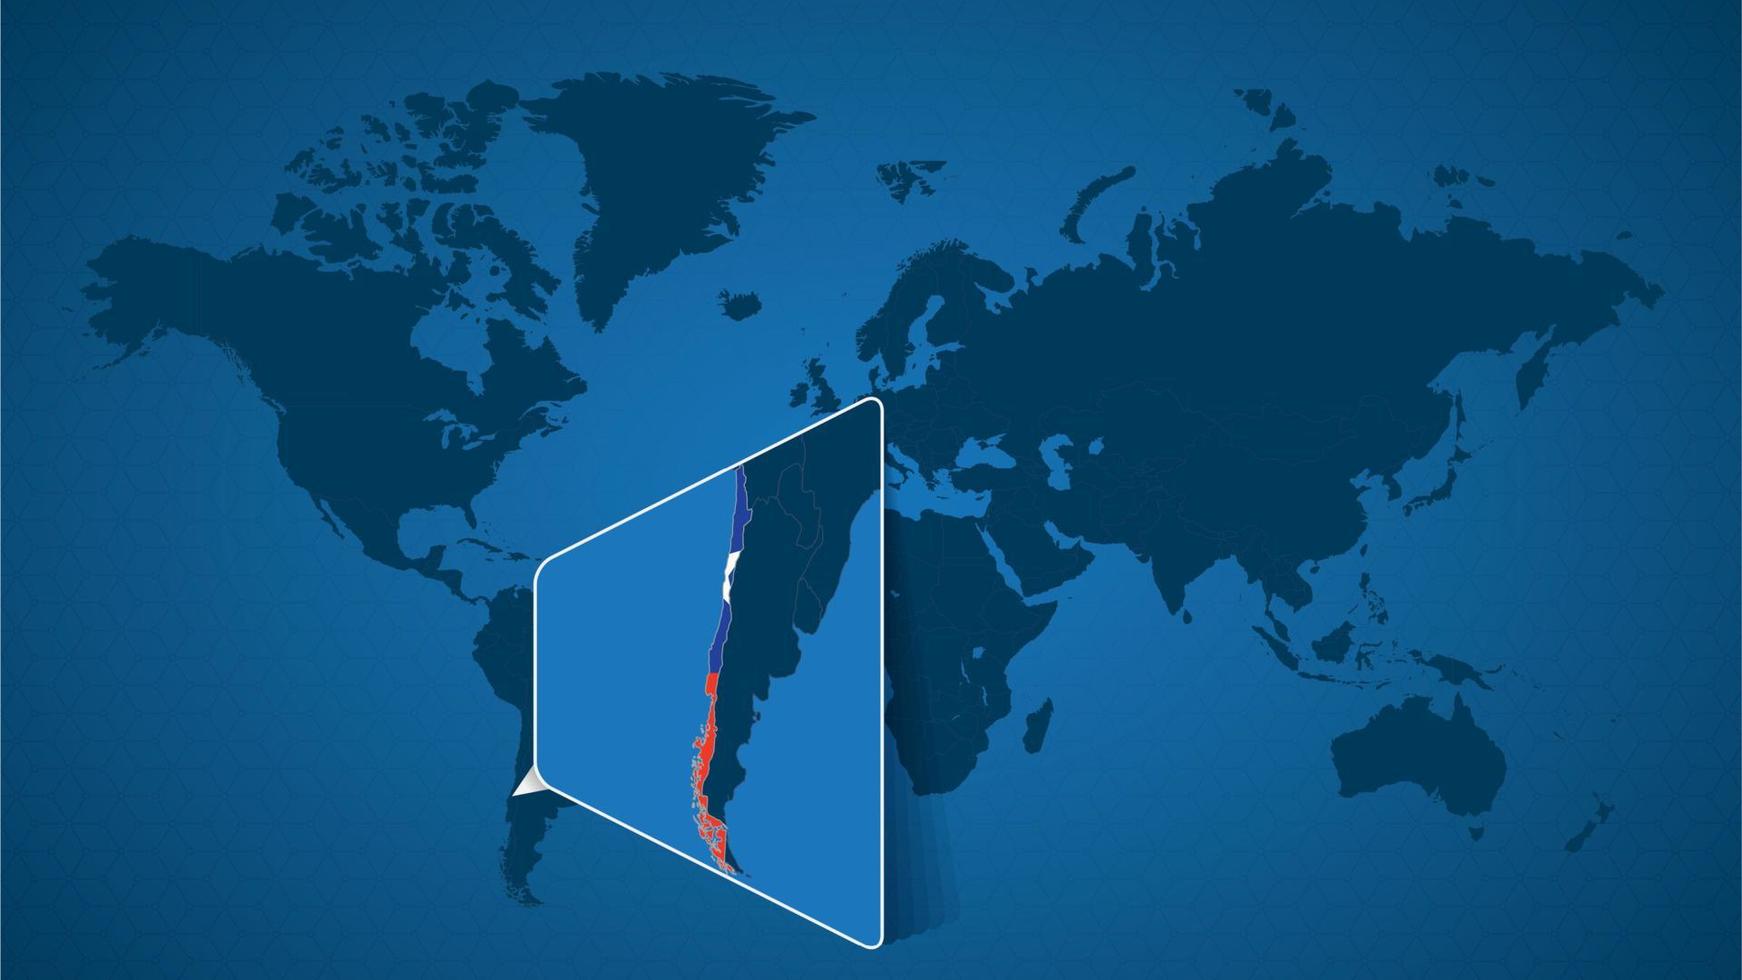 carte du monde détaillée avec carte agrandie épinglée du chili et des pays voisins. vecteur